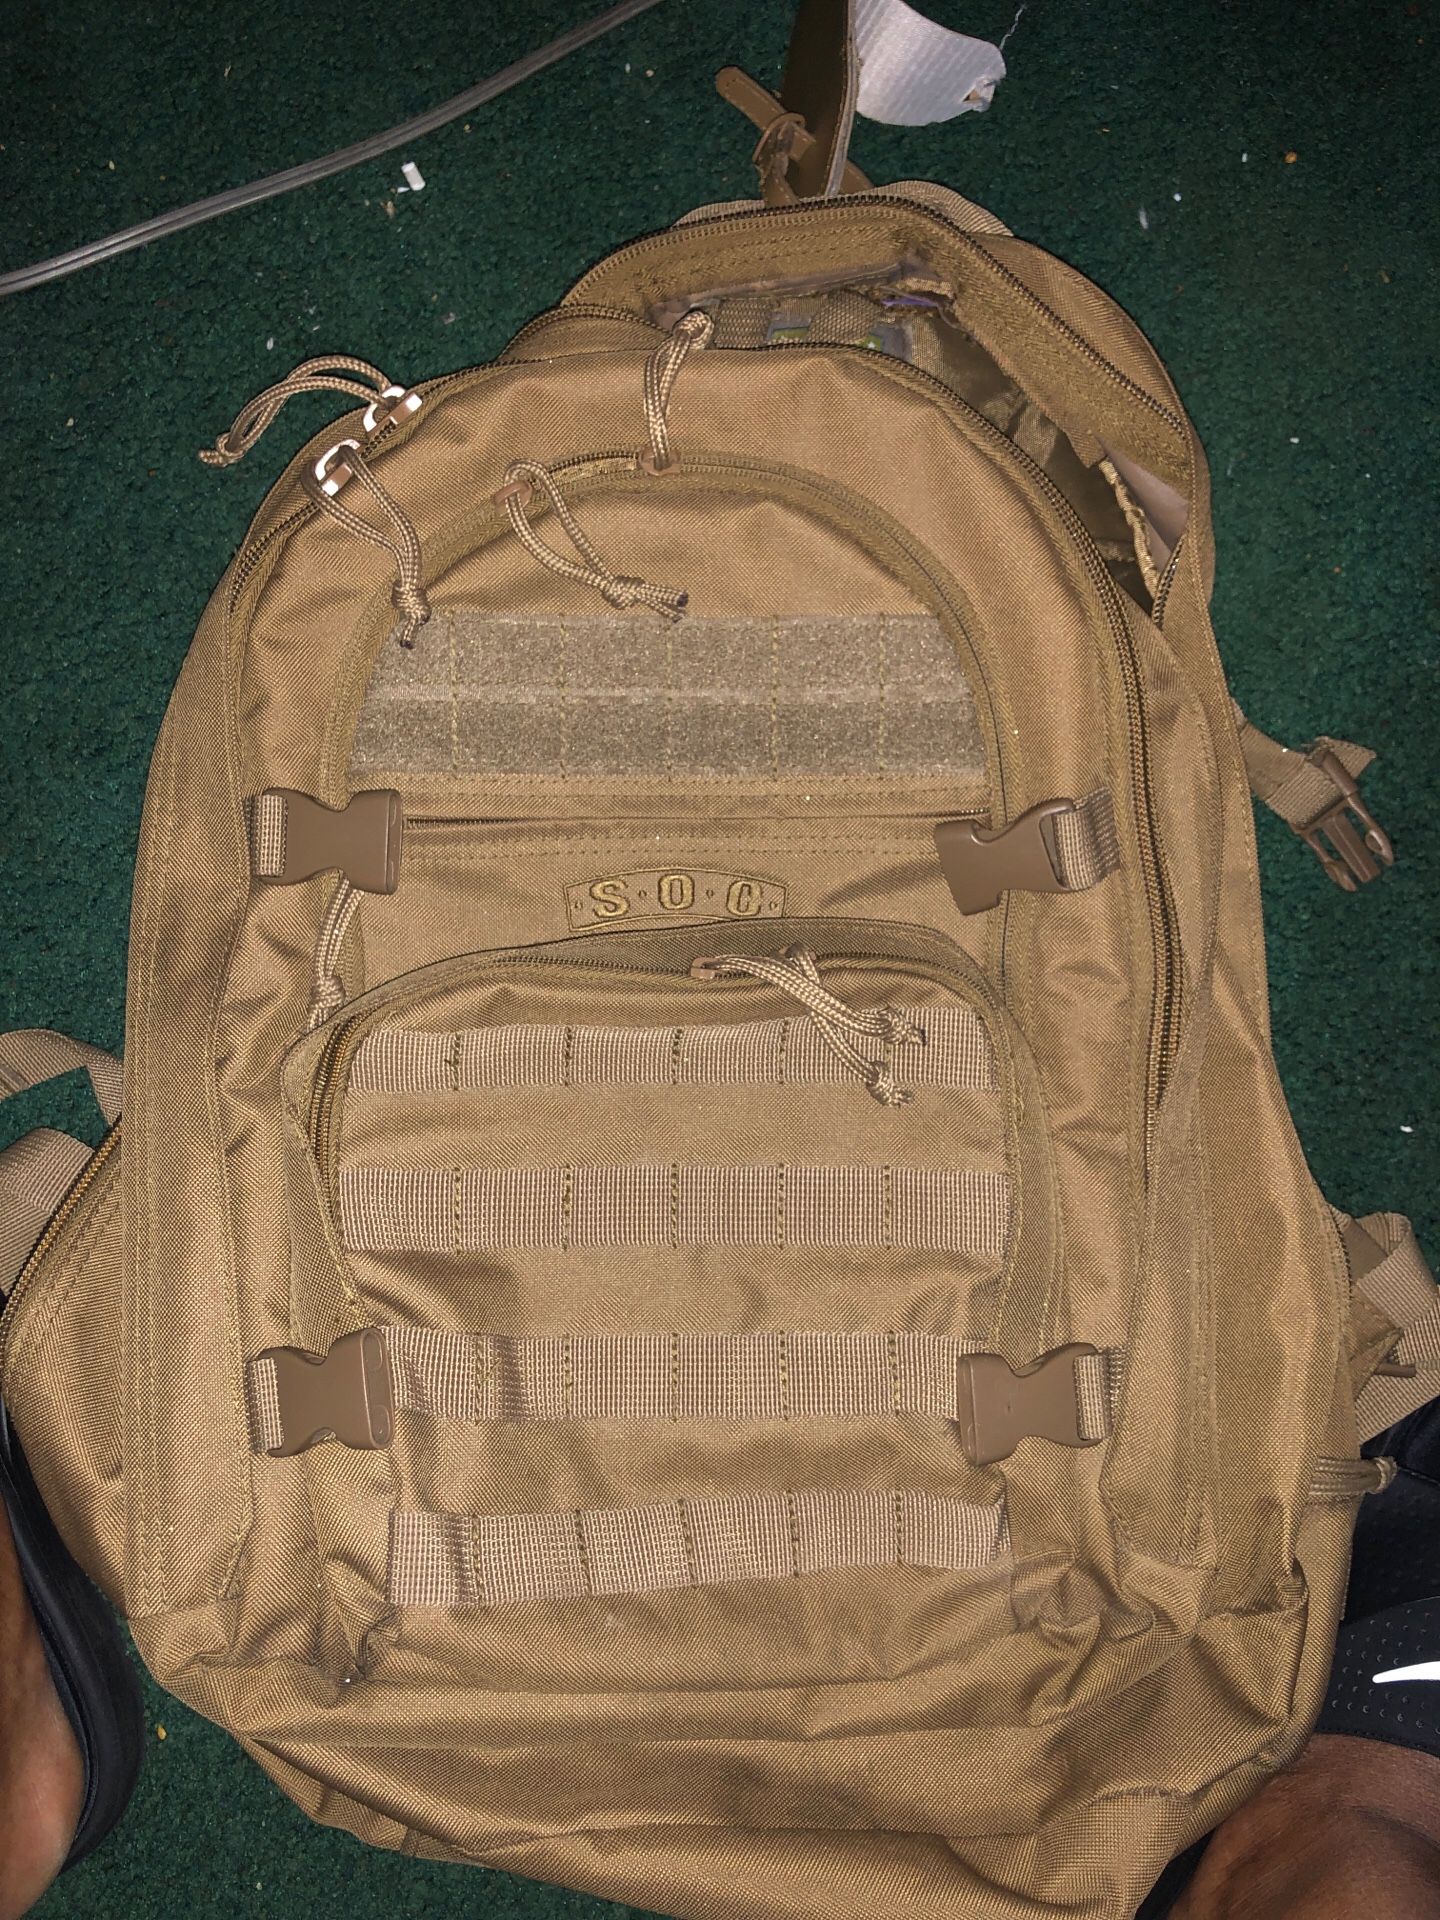 SOC military backpack